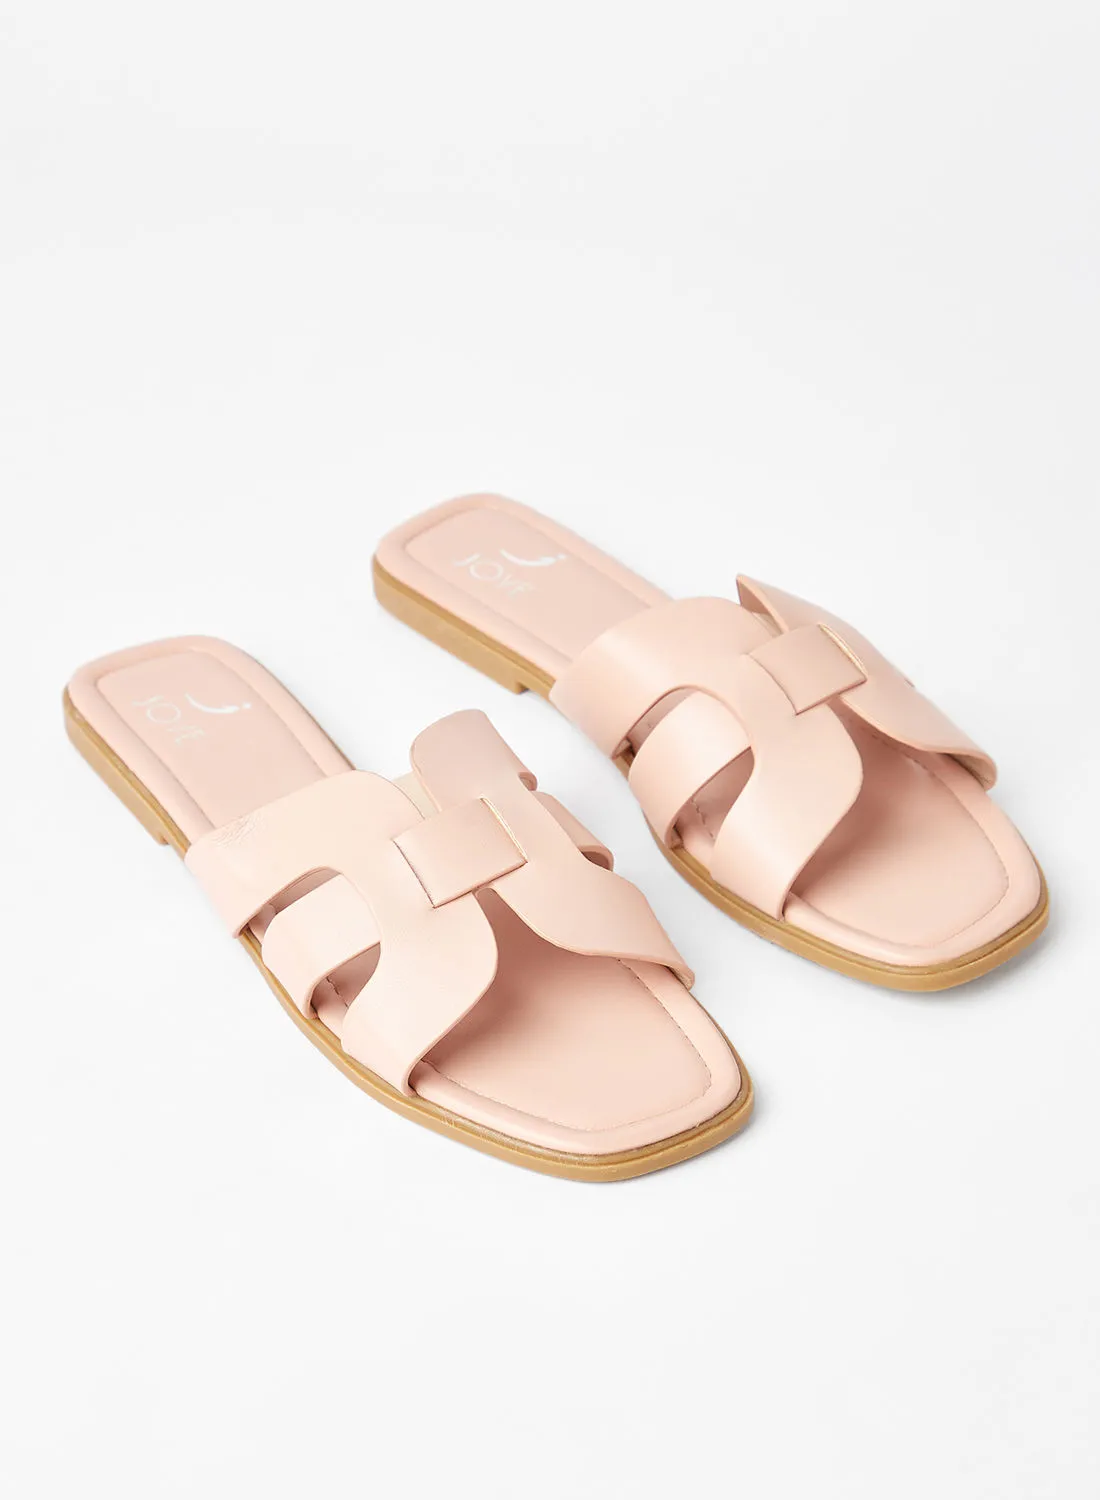 Jove Slip-On Party Wear Flat Sandals Beige